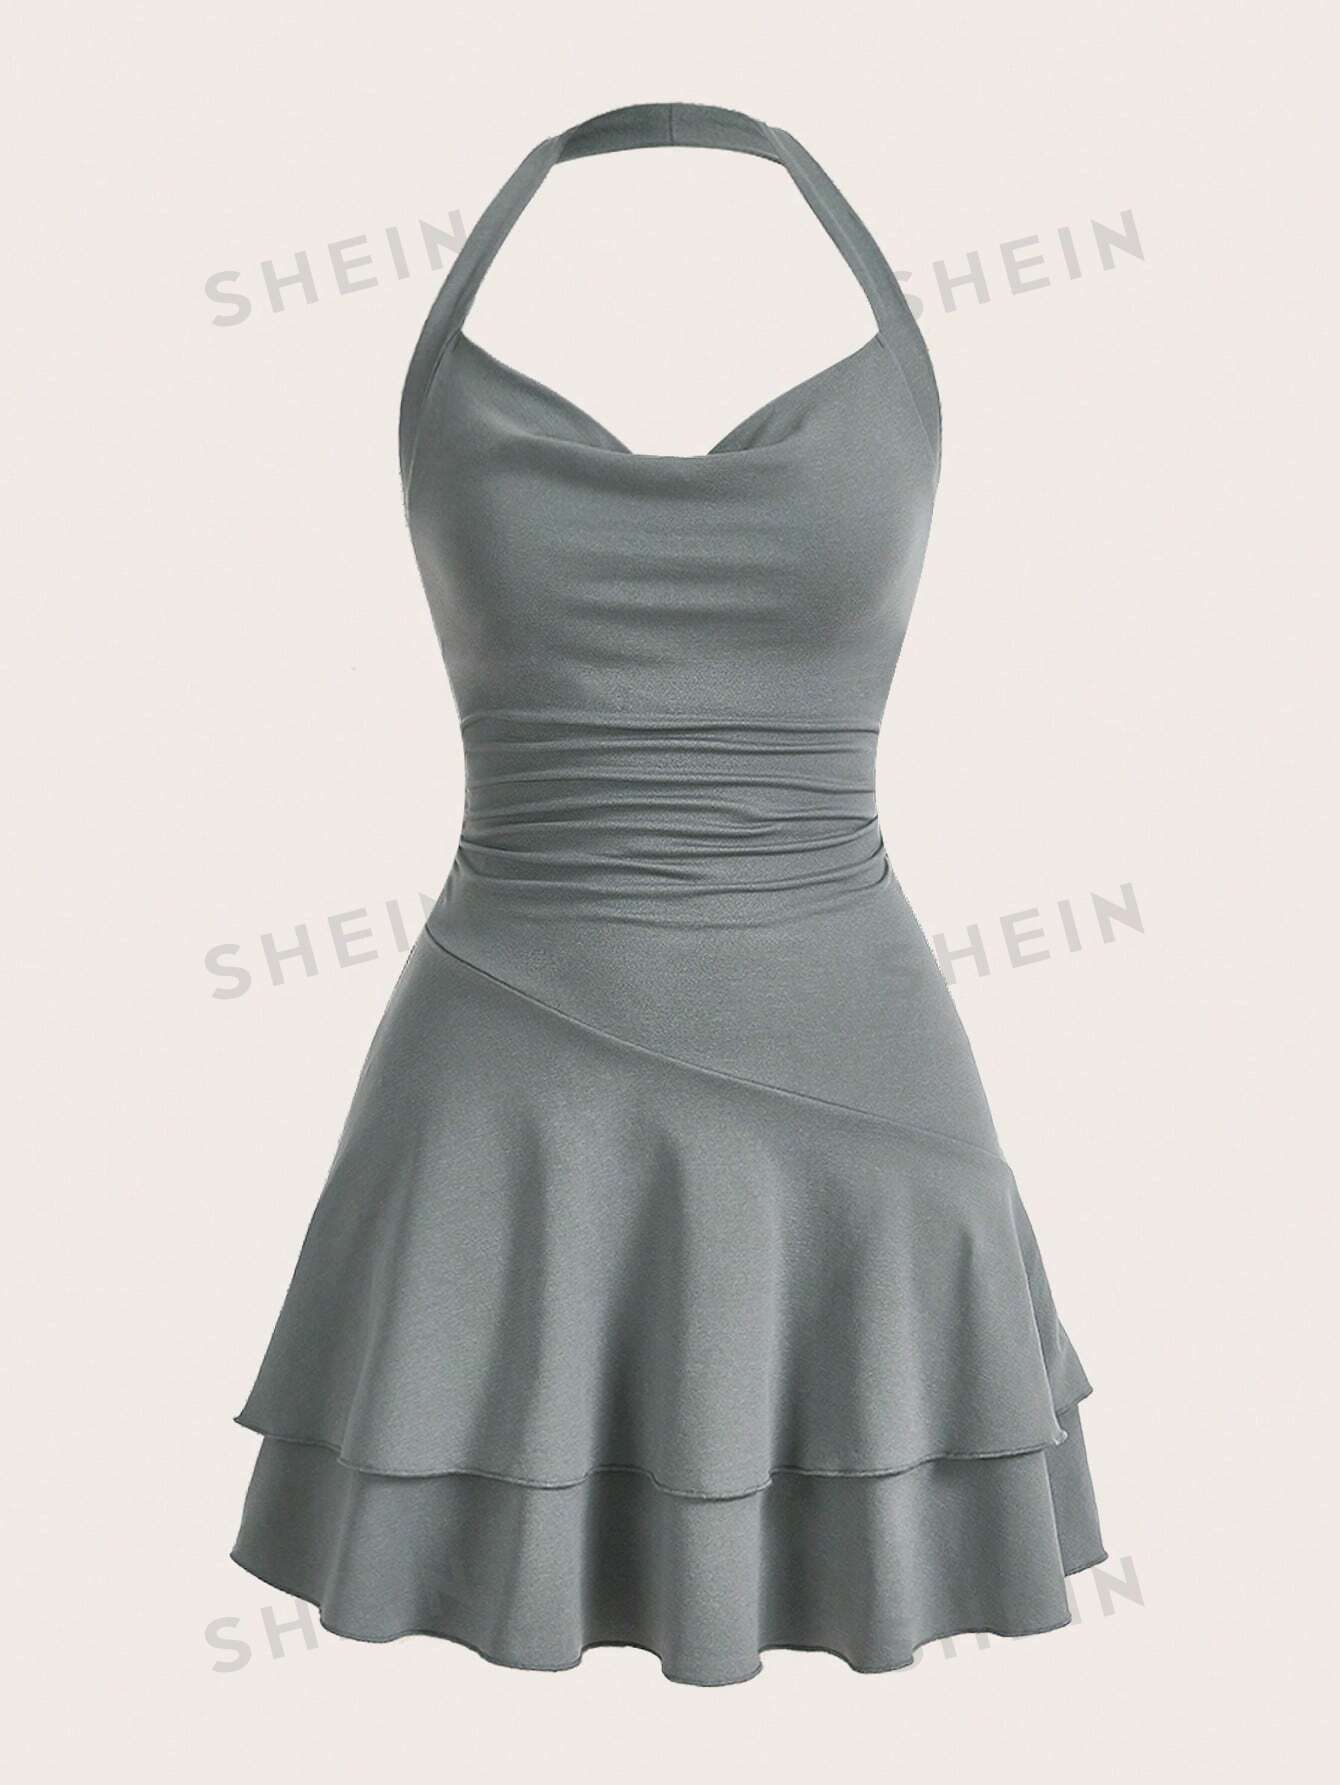 shein mod однотонное платье с гофрированной спиной и расклешенным подолом синий SHEIN MOD однотонное женское платье с бретелькой на шее и многослойным подолом, серый